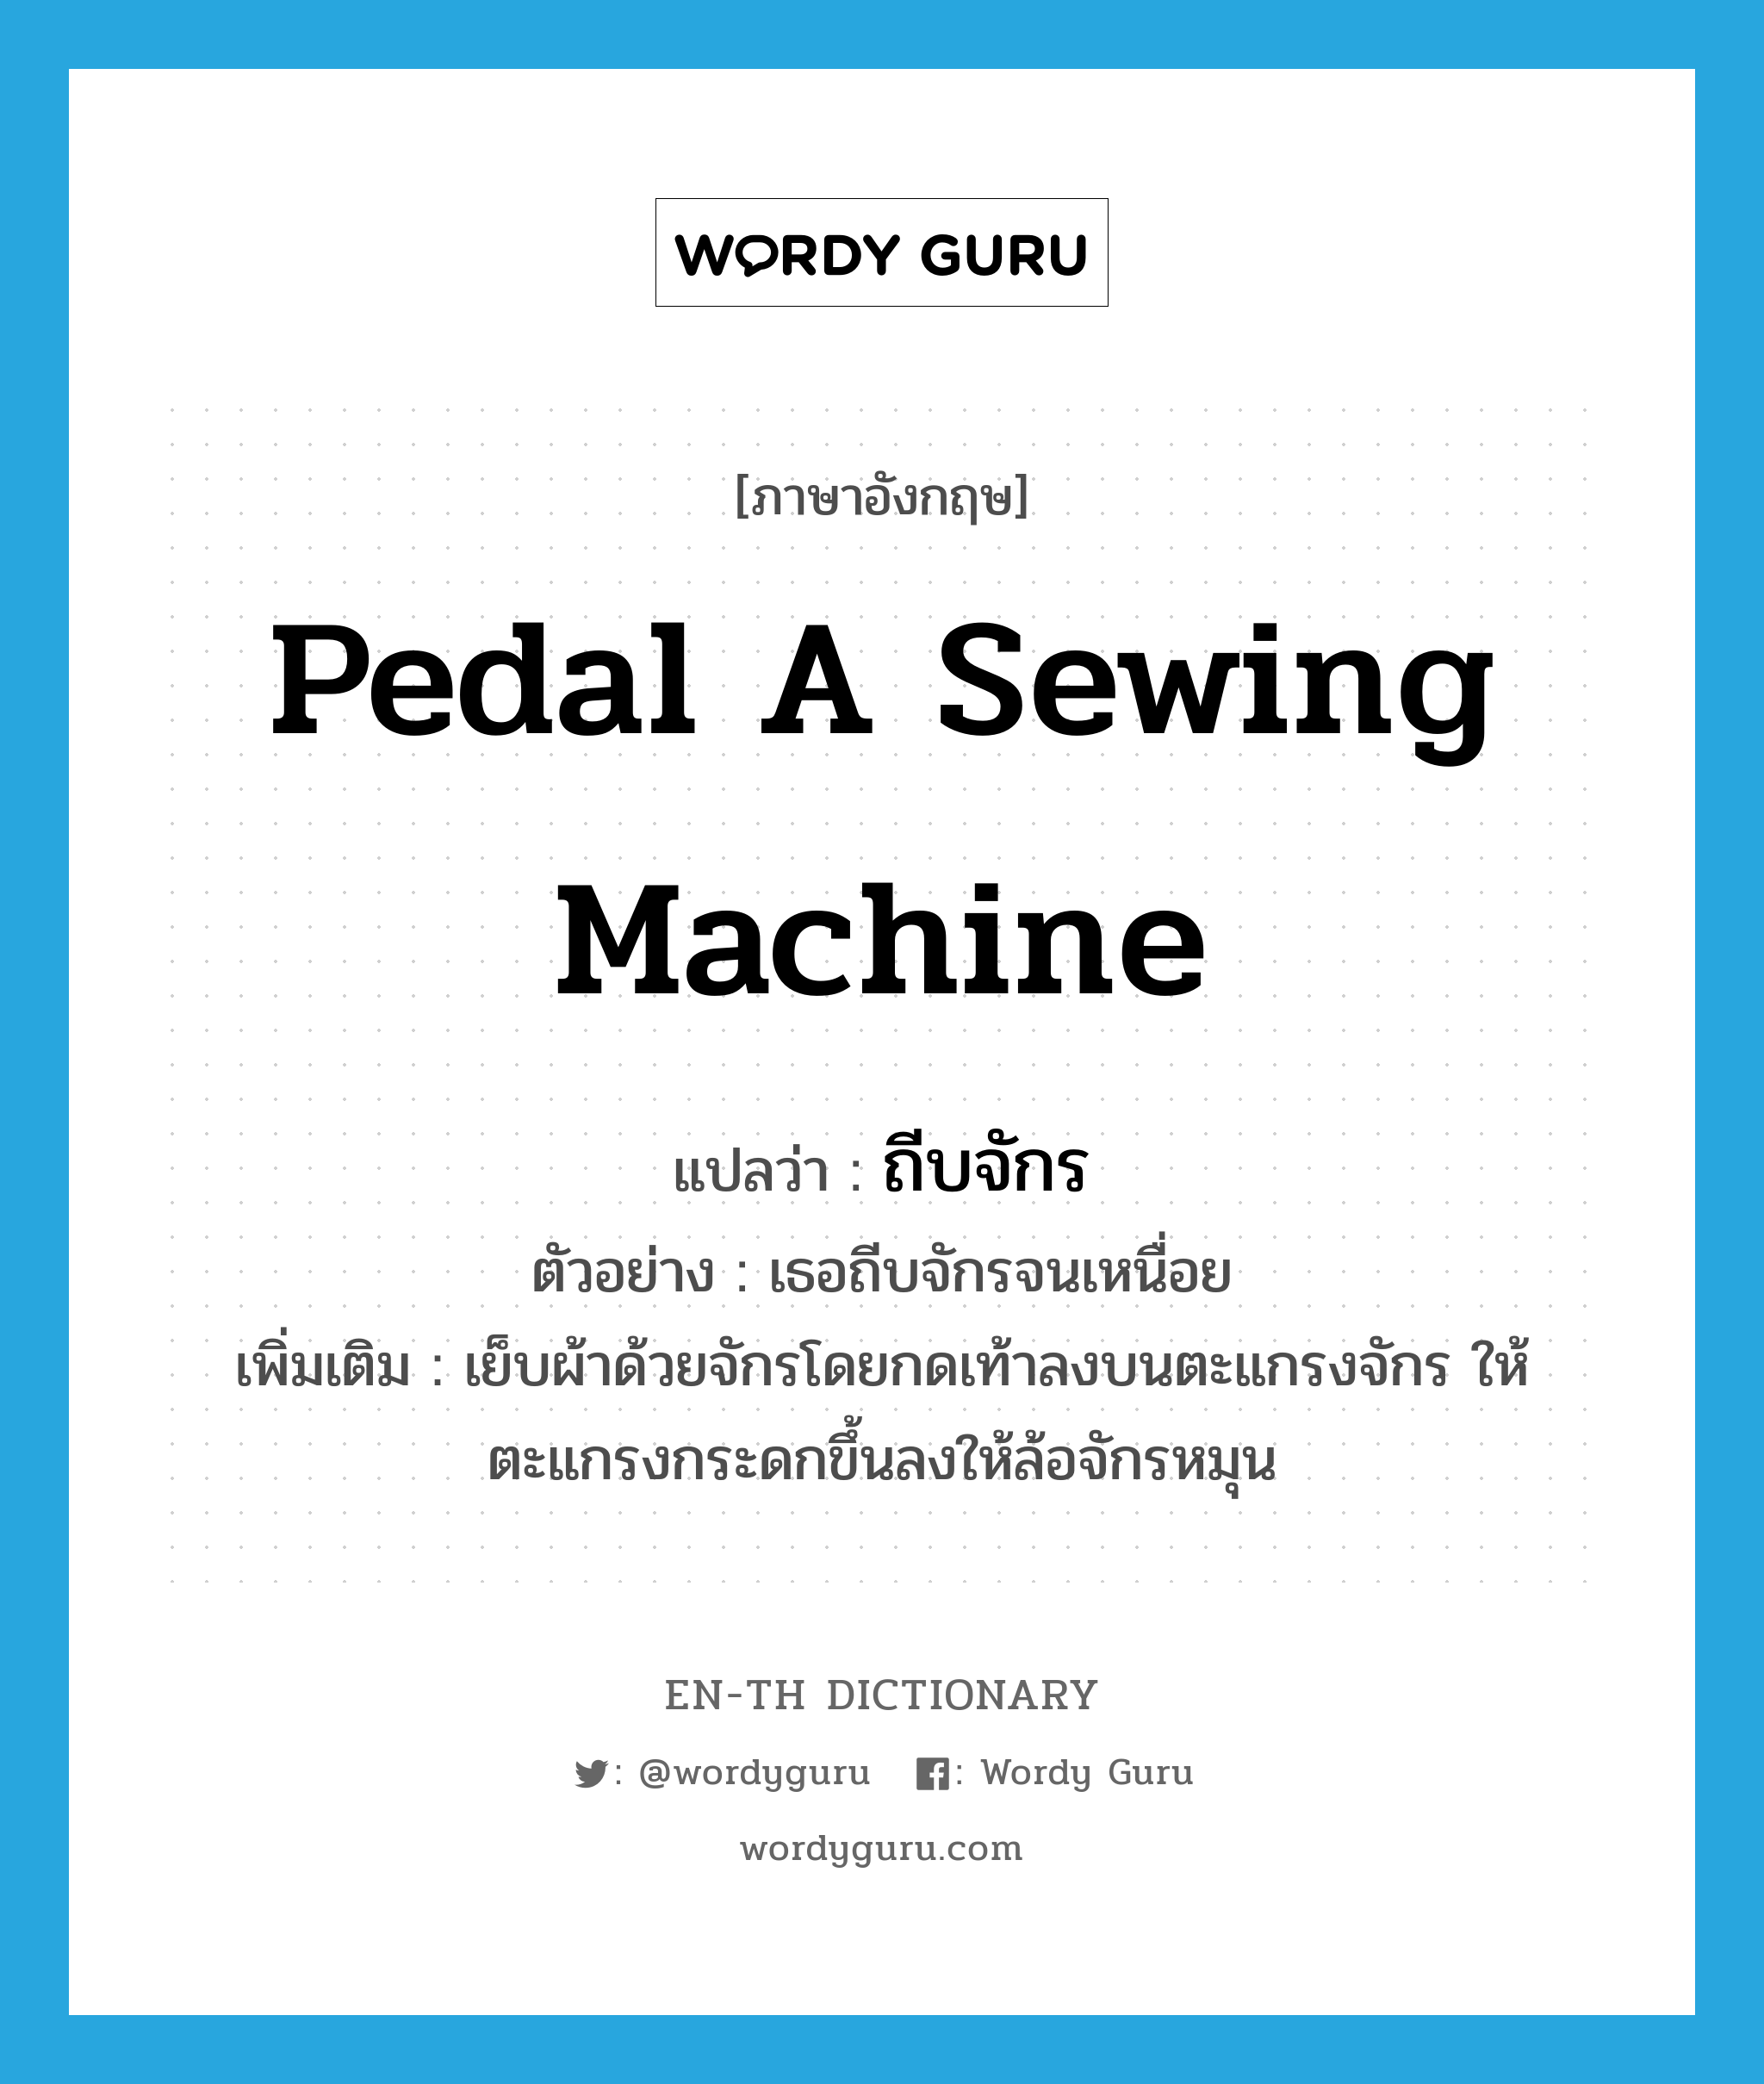 pedal a sewing machine แปลว่า?, คำศัพท์ภาษาอังกฤษ pedal a sewing machine แปลว่า ถีบจักร ประเภท V ตัวอย่าง เธอถีบจักรจนเหนื่อย เพิ่มเติม เย็บผ้าด้วยจักรโดยกดเท้าลงบนตะแกรงจักร ให้ตะแกรงกระดกขึ้นลงให้ล้อจักรหมุน หมวด V